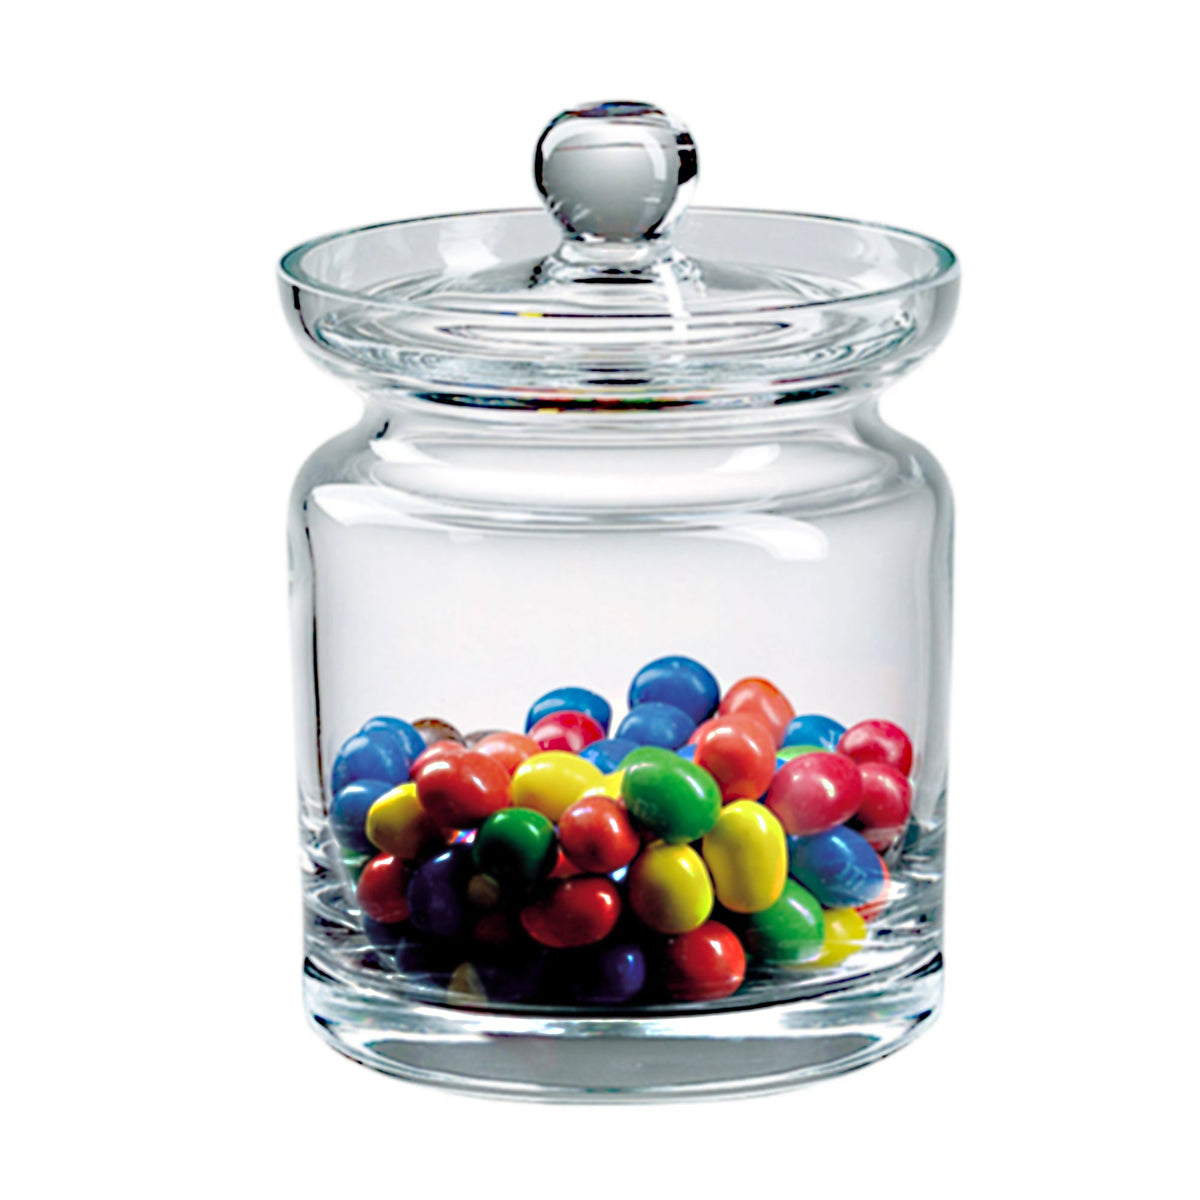 Crystal Candy or Cookie Jar